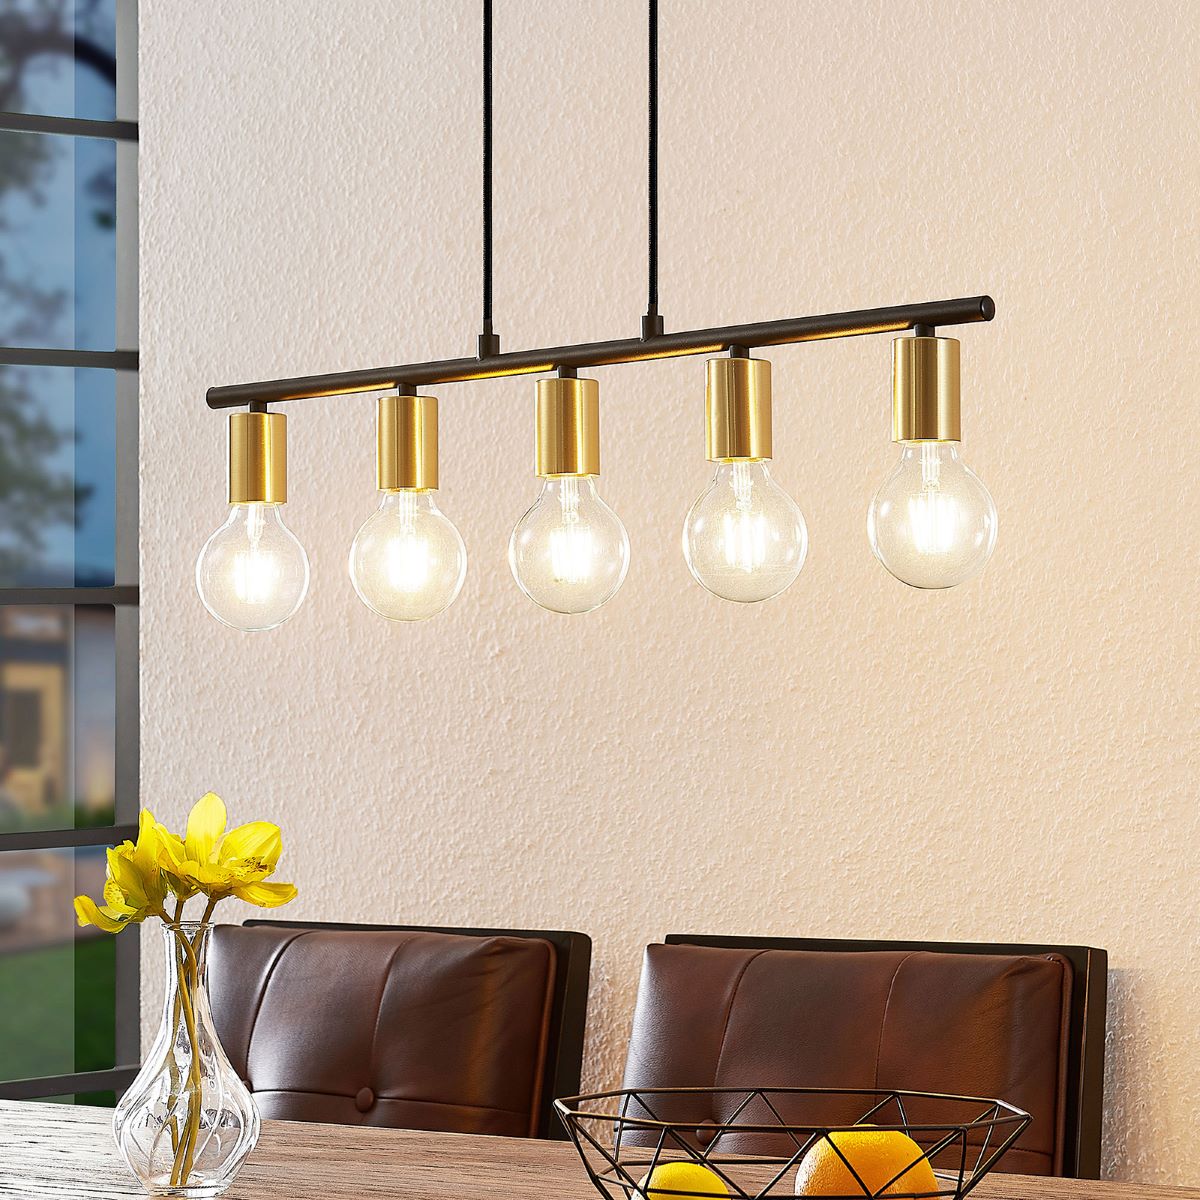 What Light Bulb Watt Is Best For Dining Room